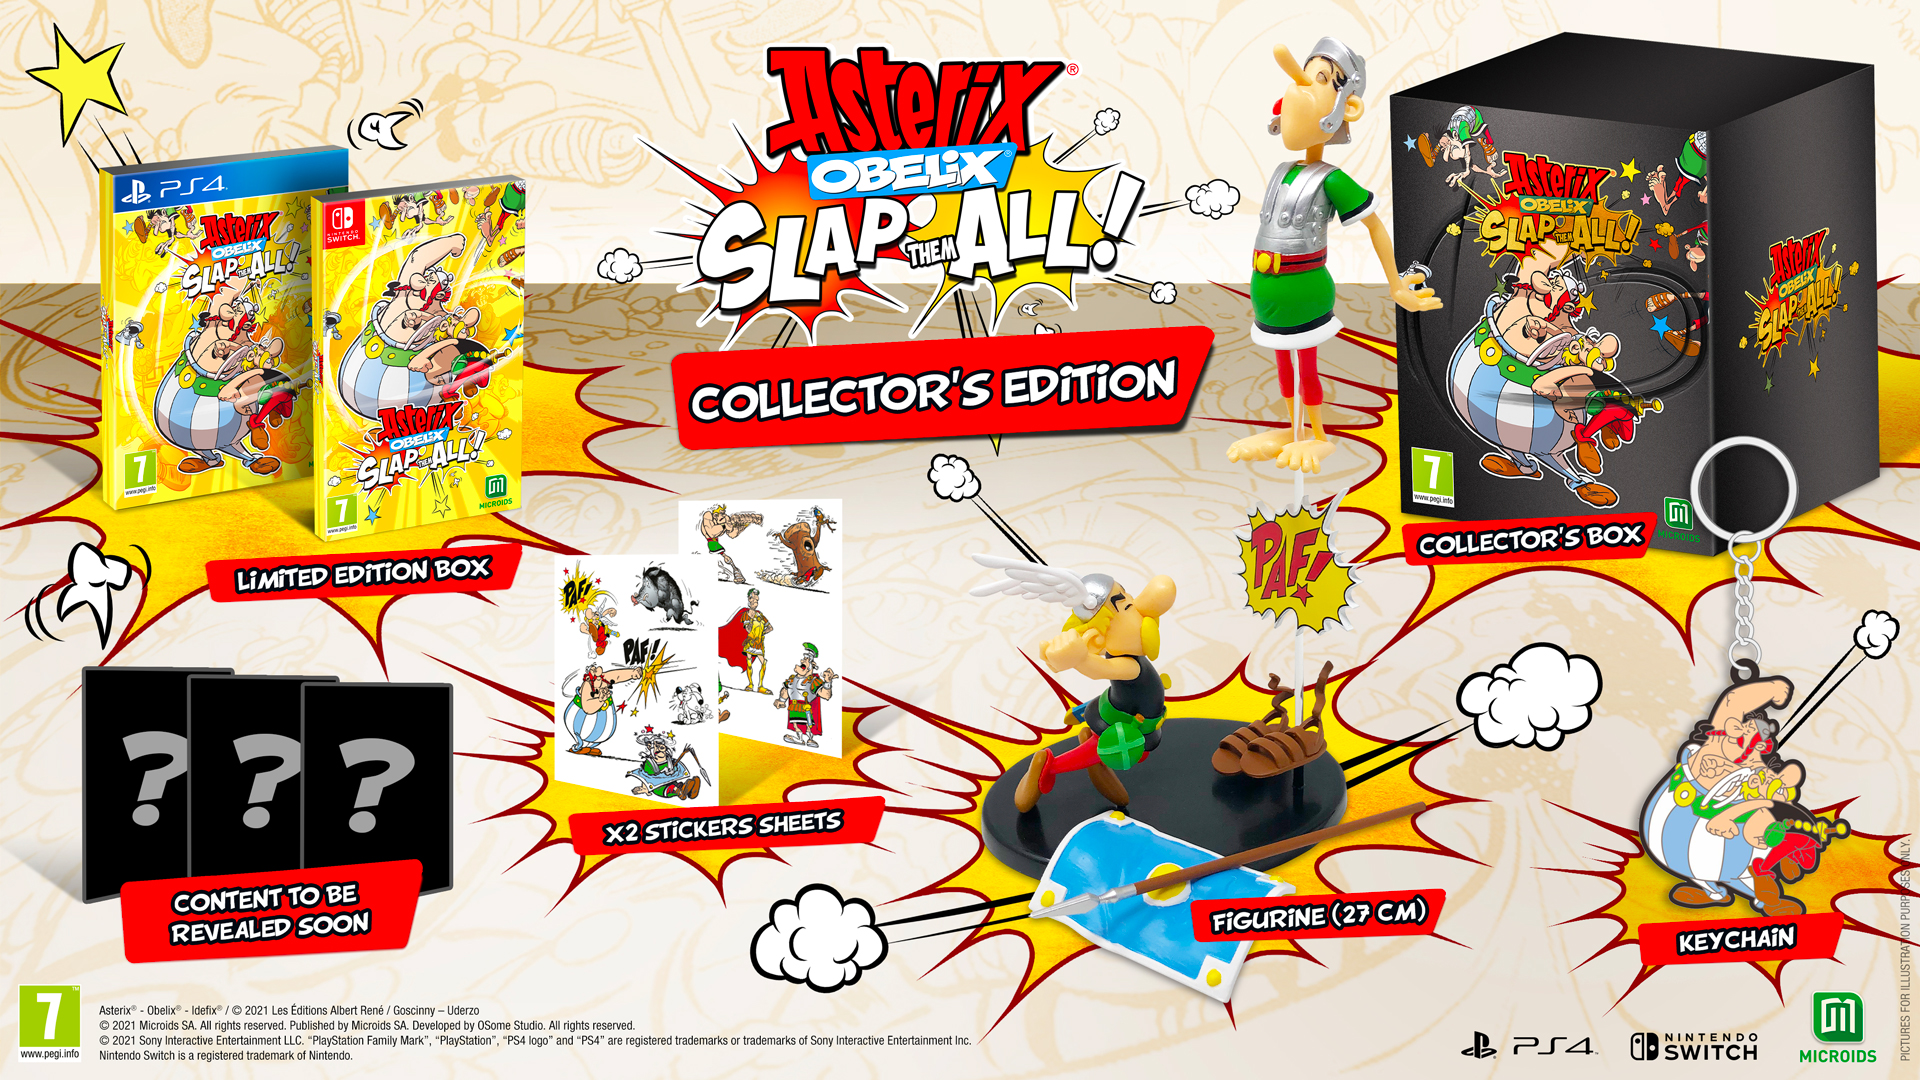 Asterix and Obelix: Slap them All! - Collectors Edition